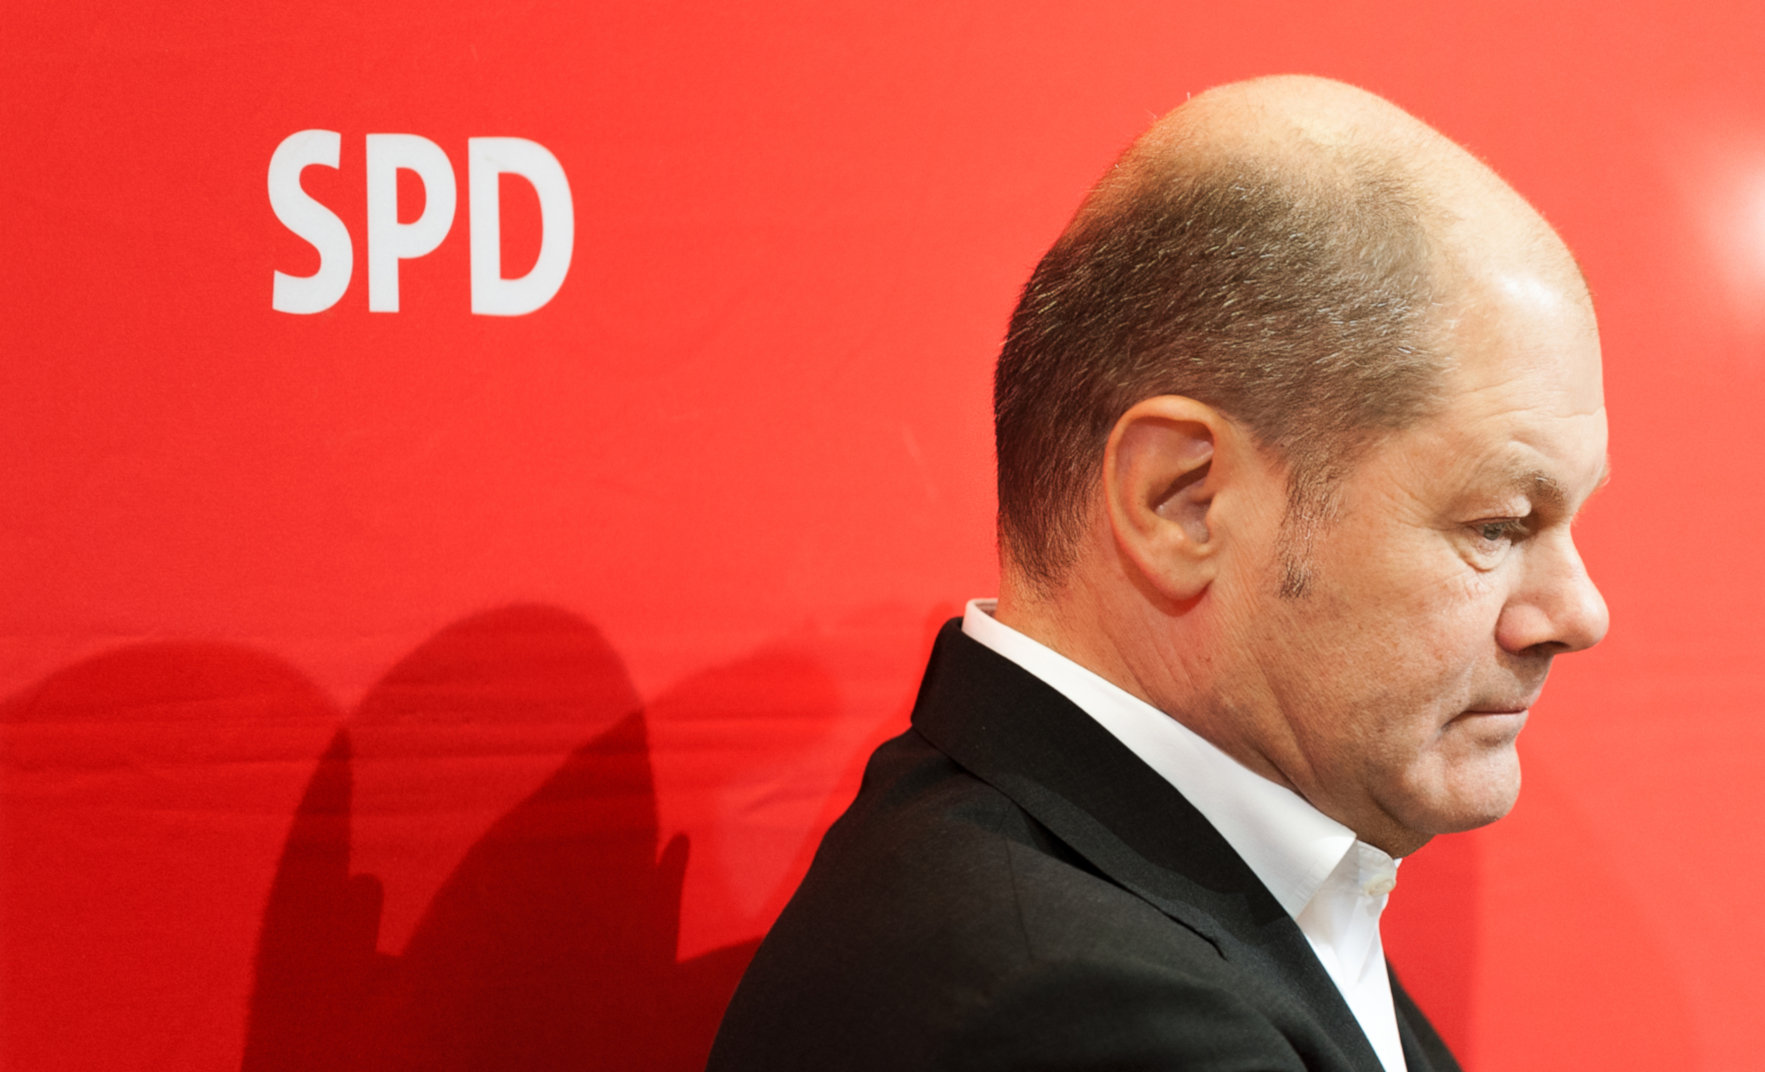 Γερμανικές εκλογές: Πρώτο το SPD του Όλαφ Σολτς – Πανωλεθρία για CDU/CSU, θρίαμβος για το Πράσινο Κόμμα